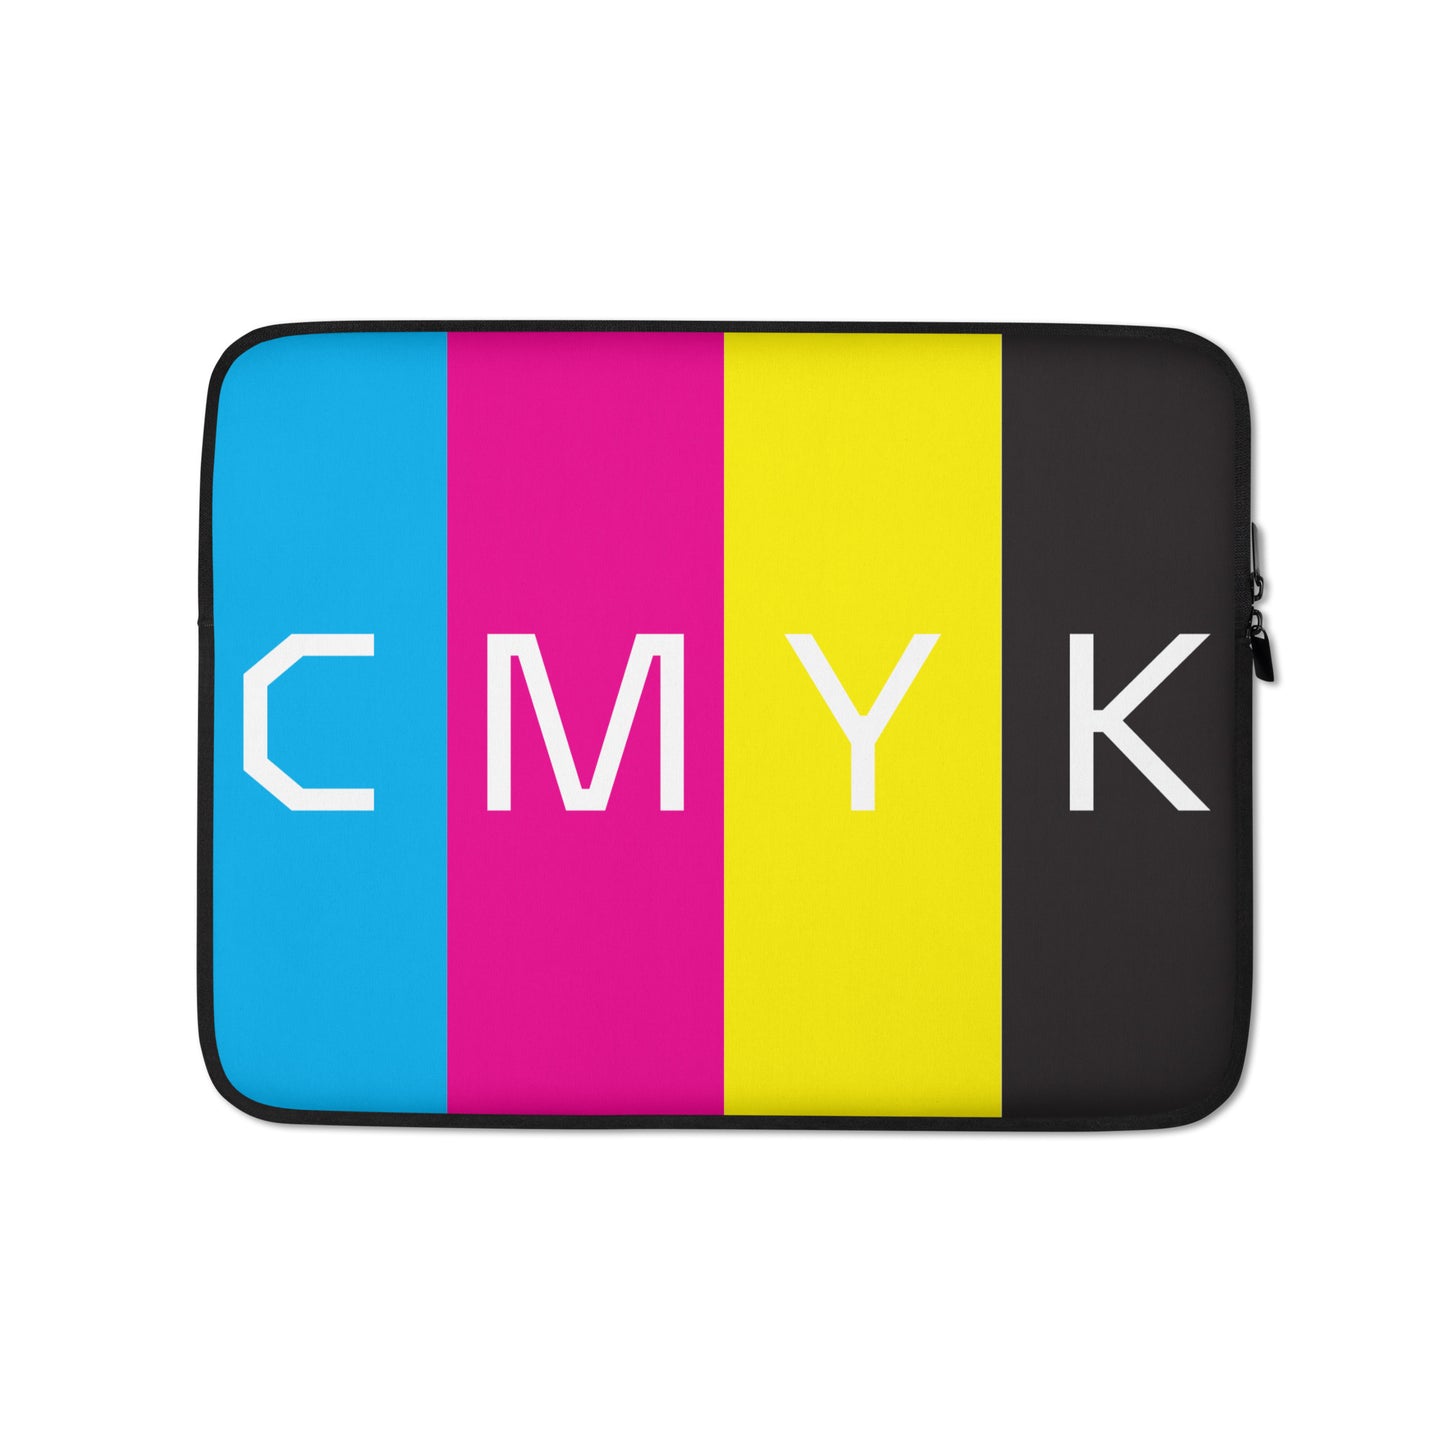 CMYK Laptop Sleeve